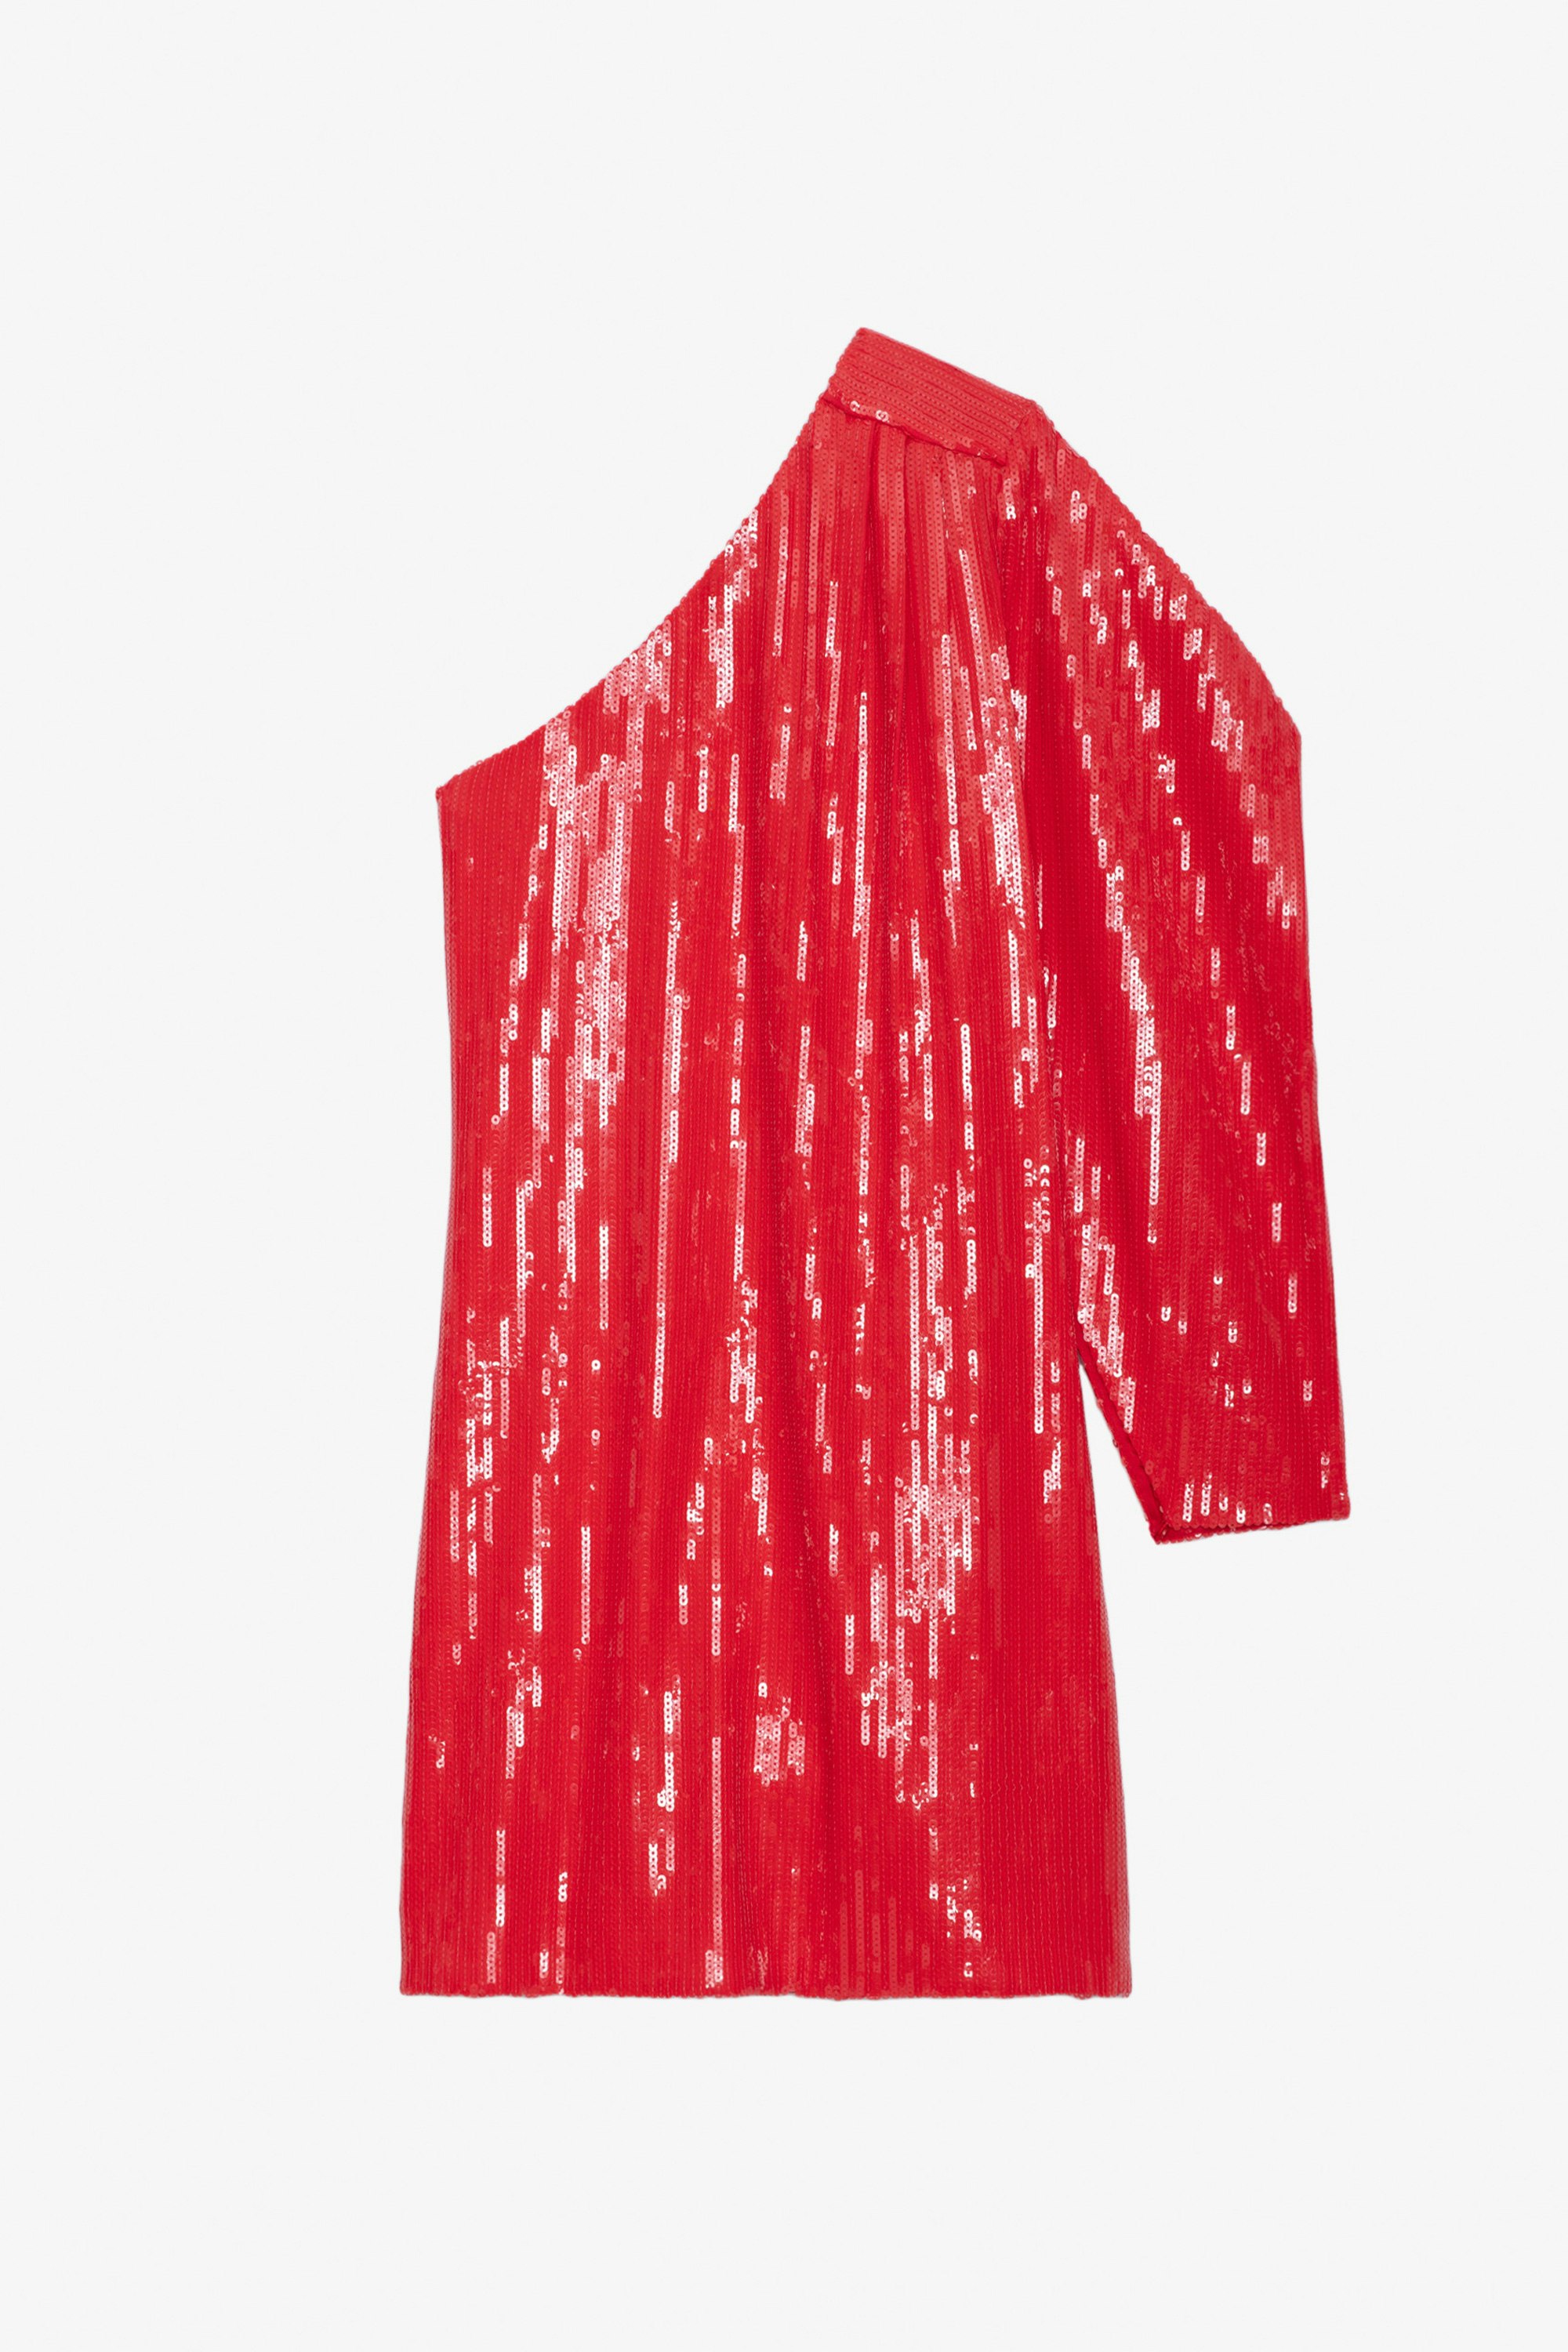 Robe Roely Sequins - Robe courte rouge à sequins et manche asymétrique et drapée.